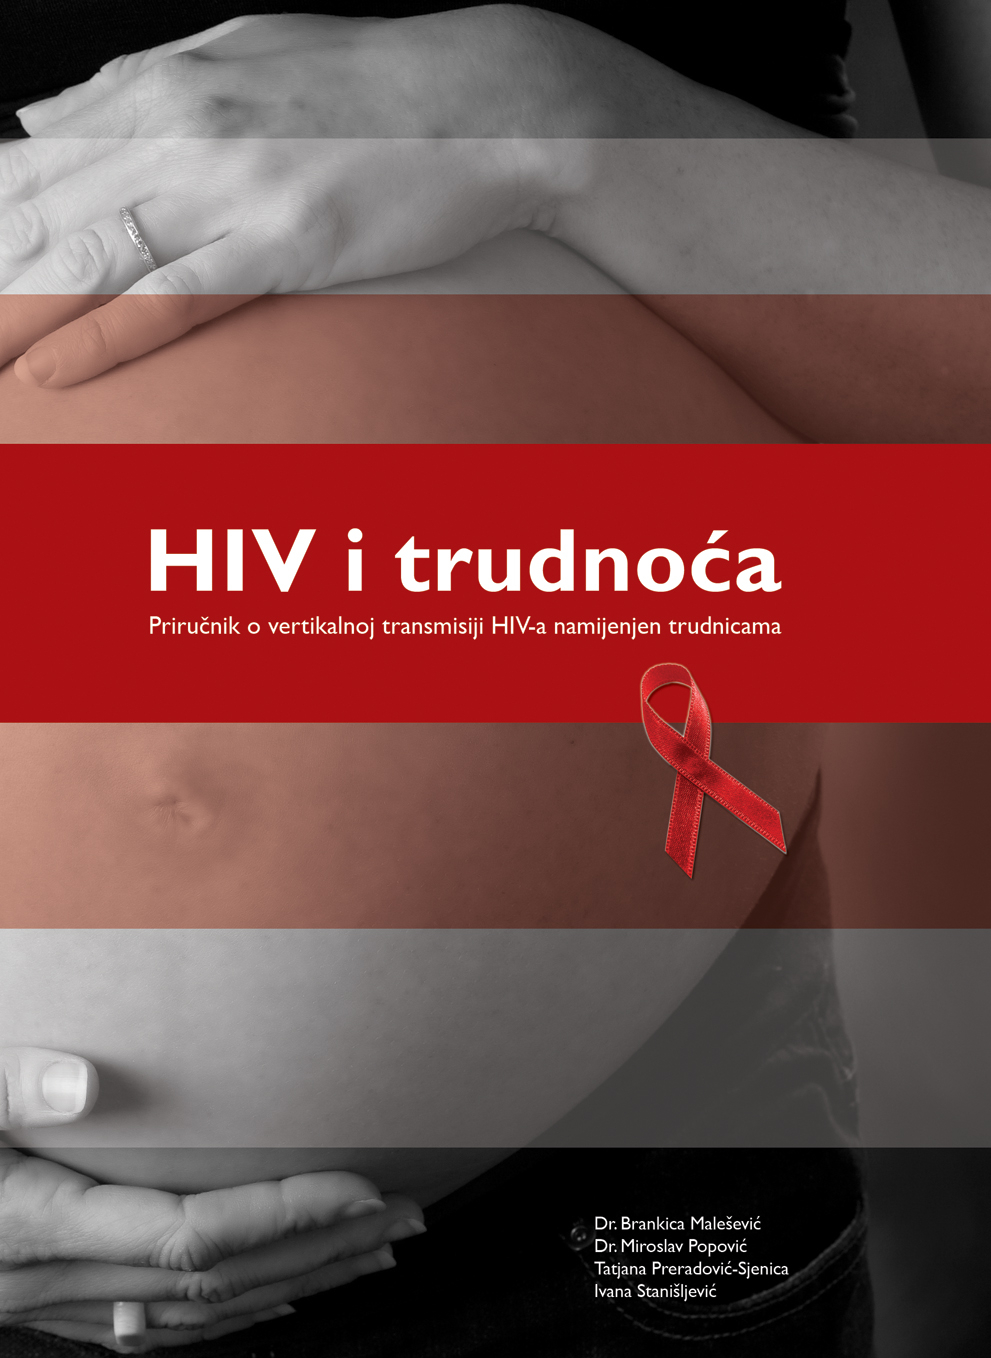 HIV i trudnoća - Priručnik o vertikalnoj transmisiji HIV-a namijenjen trudnicama